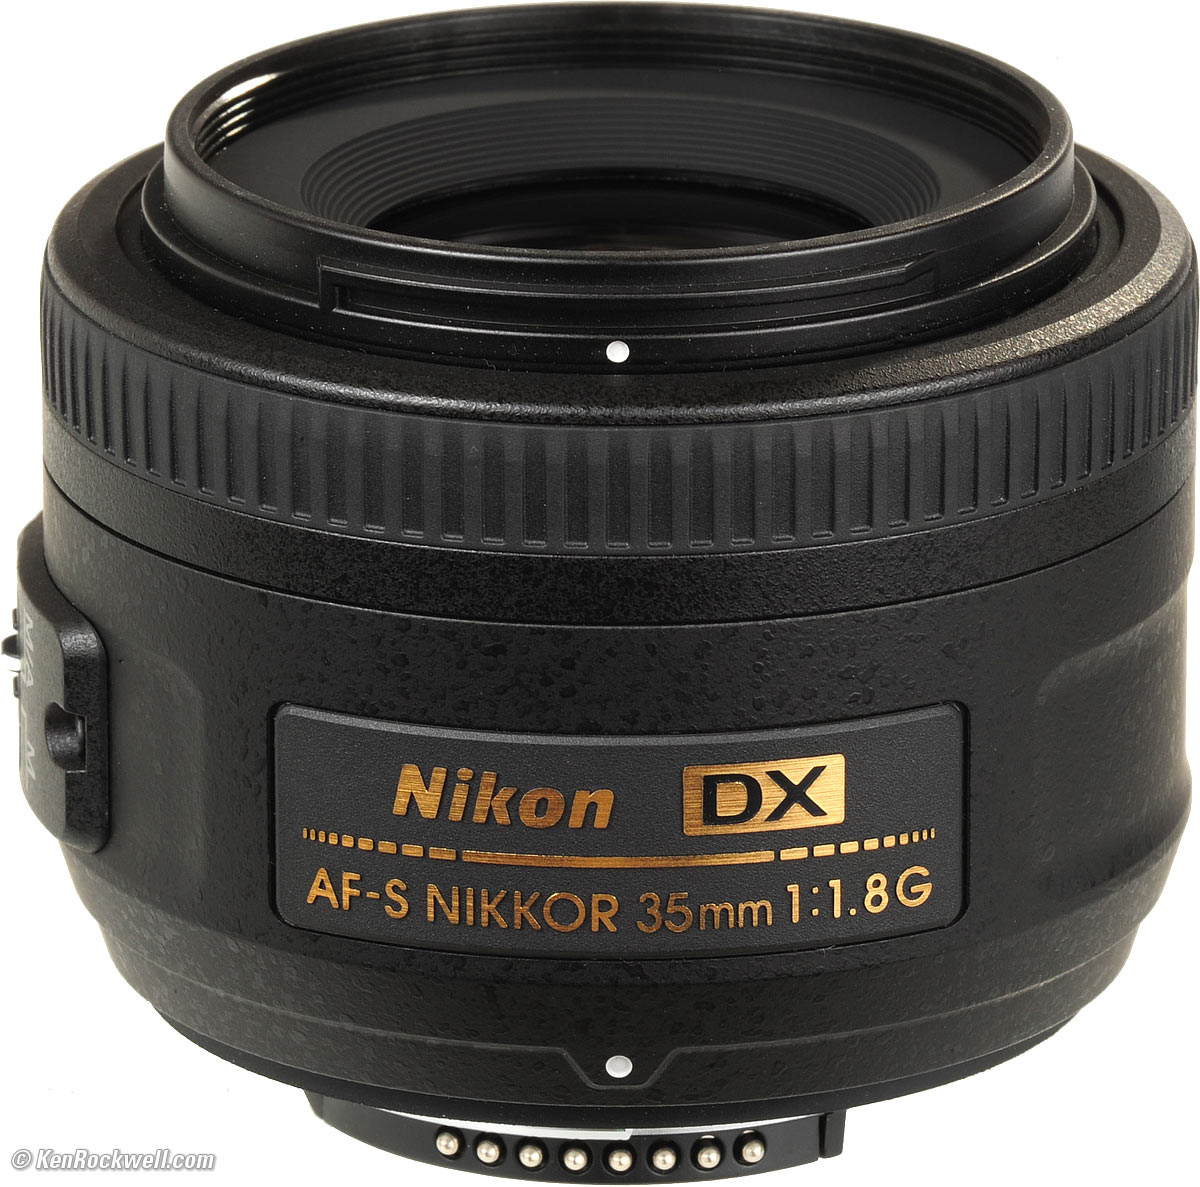 slogan Expert heap Nikon 35mm f/1.8 DX